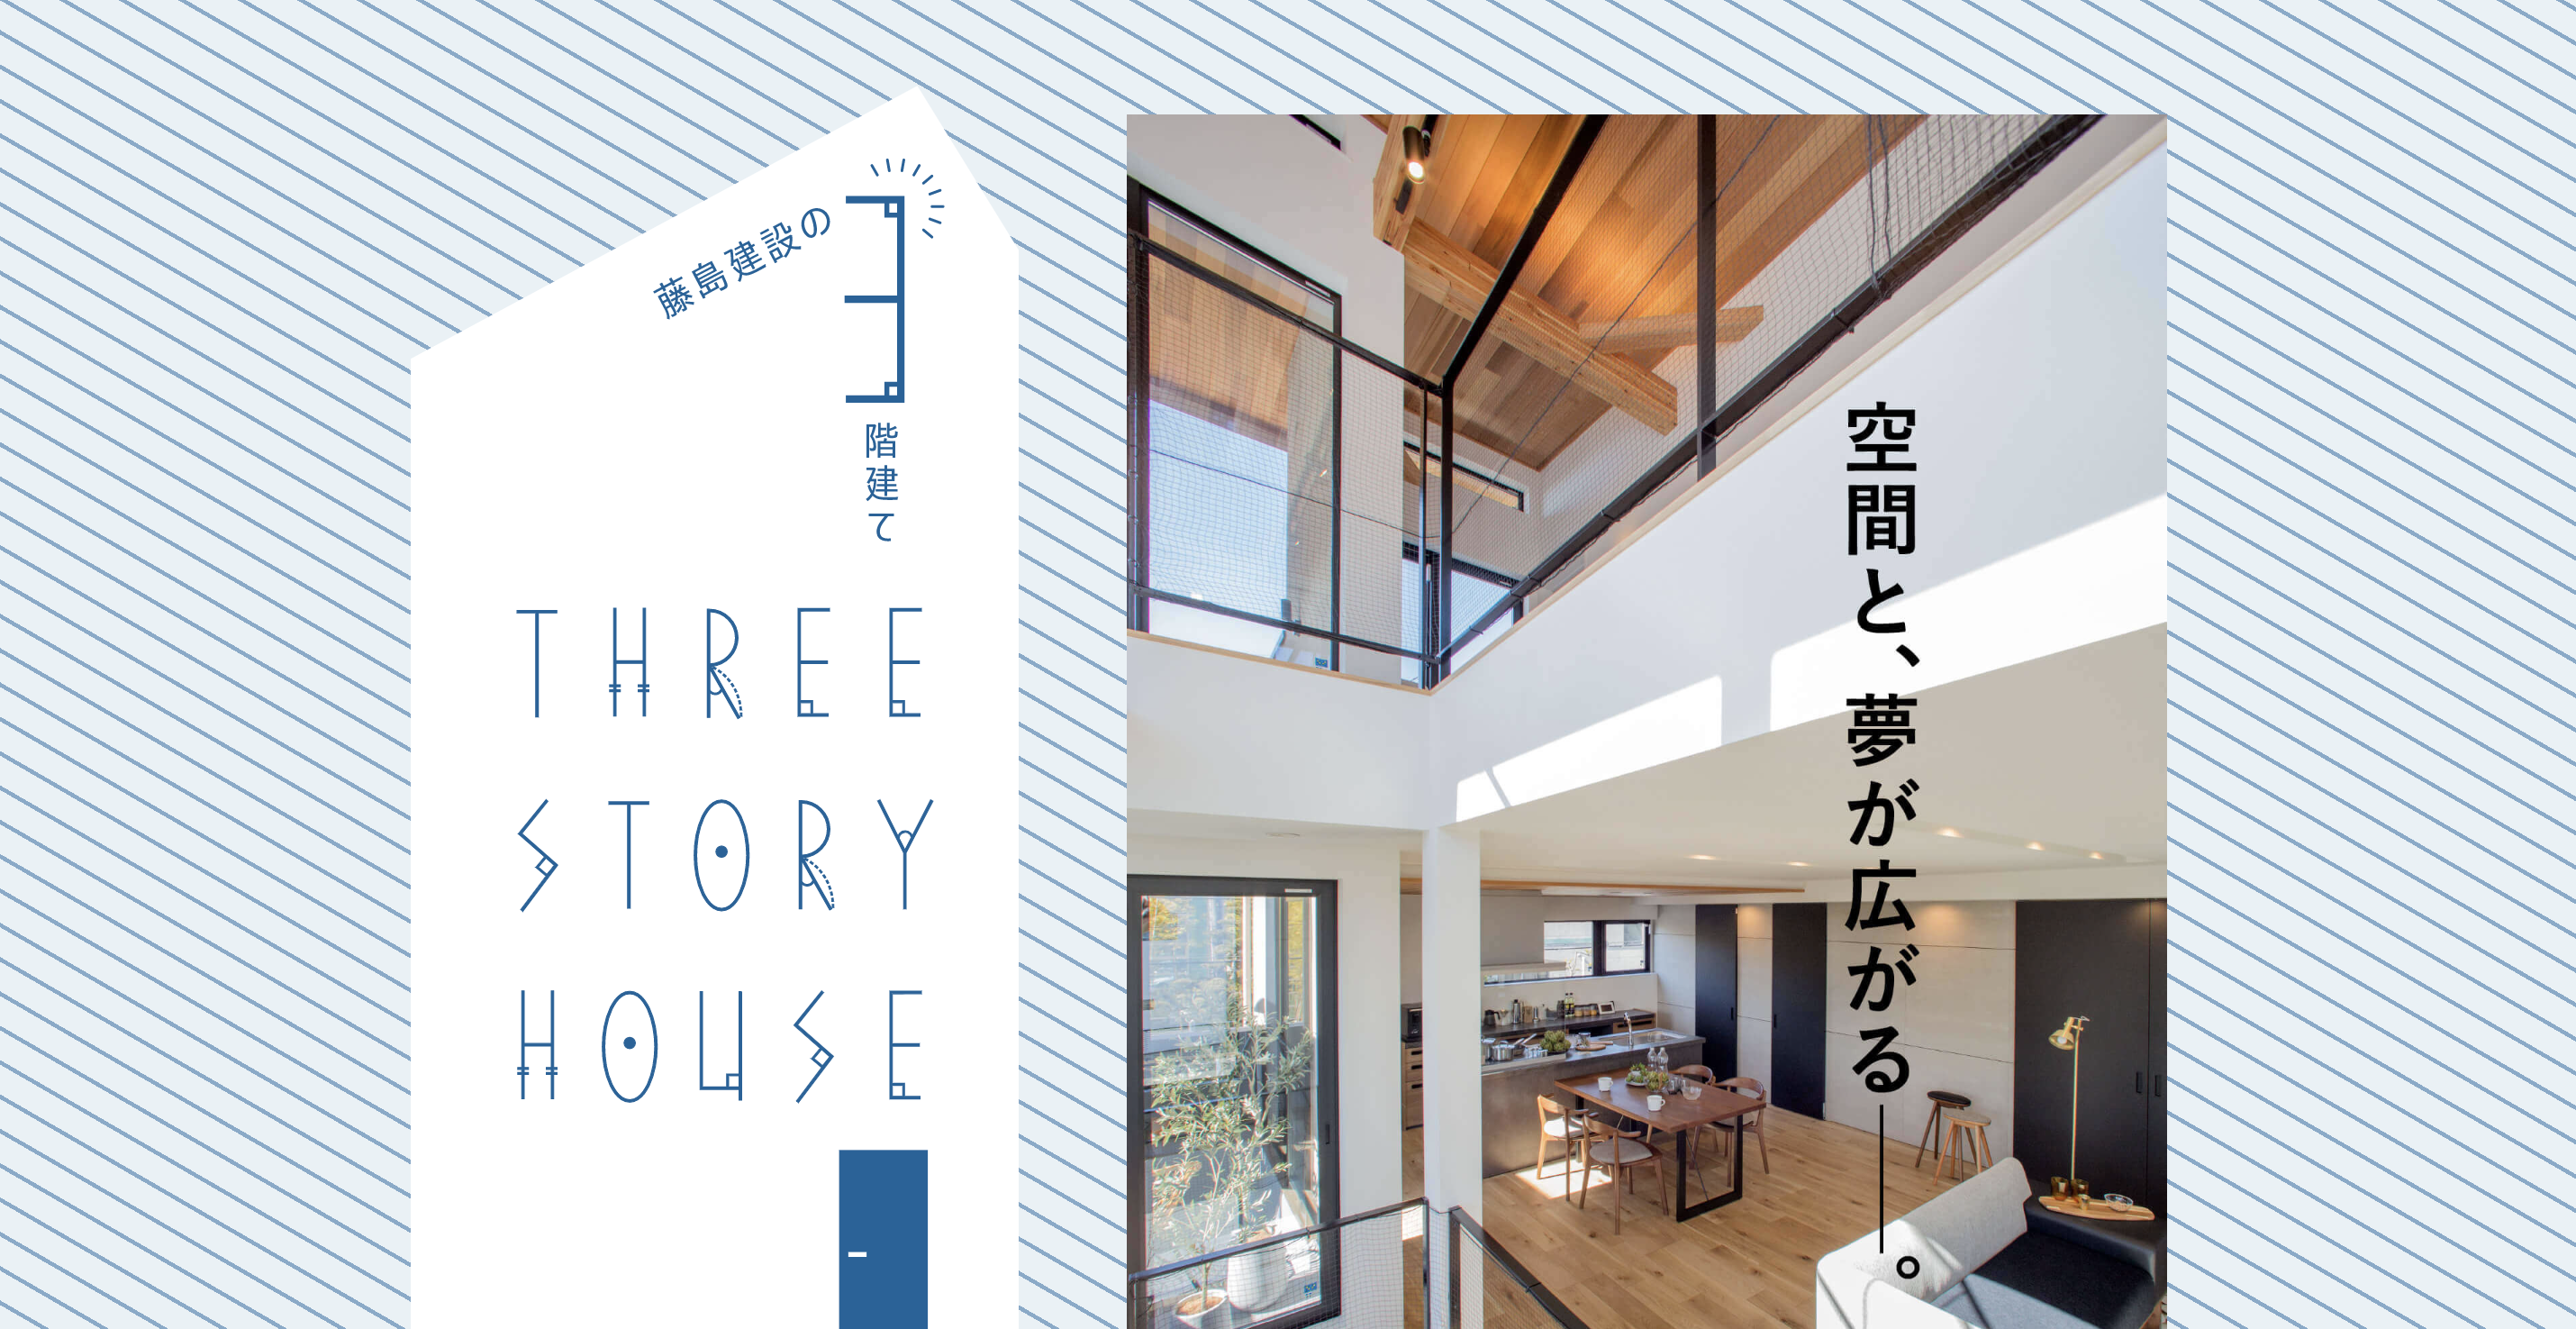 三階建て特設サイト「THREE STORY HOUSE」をオープンしました。